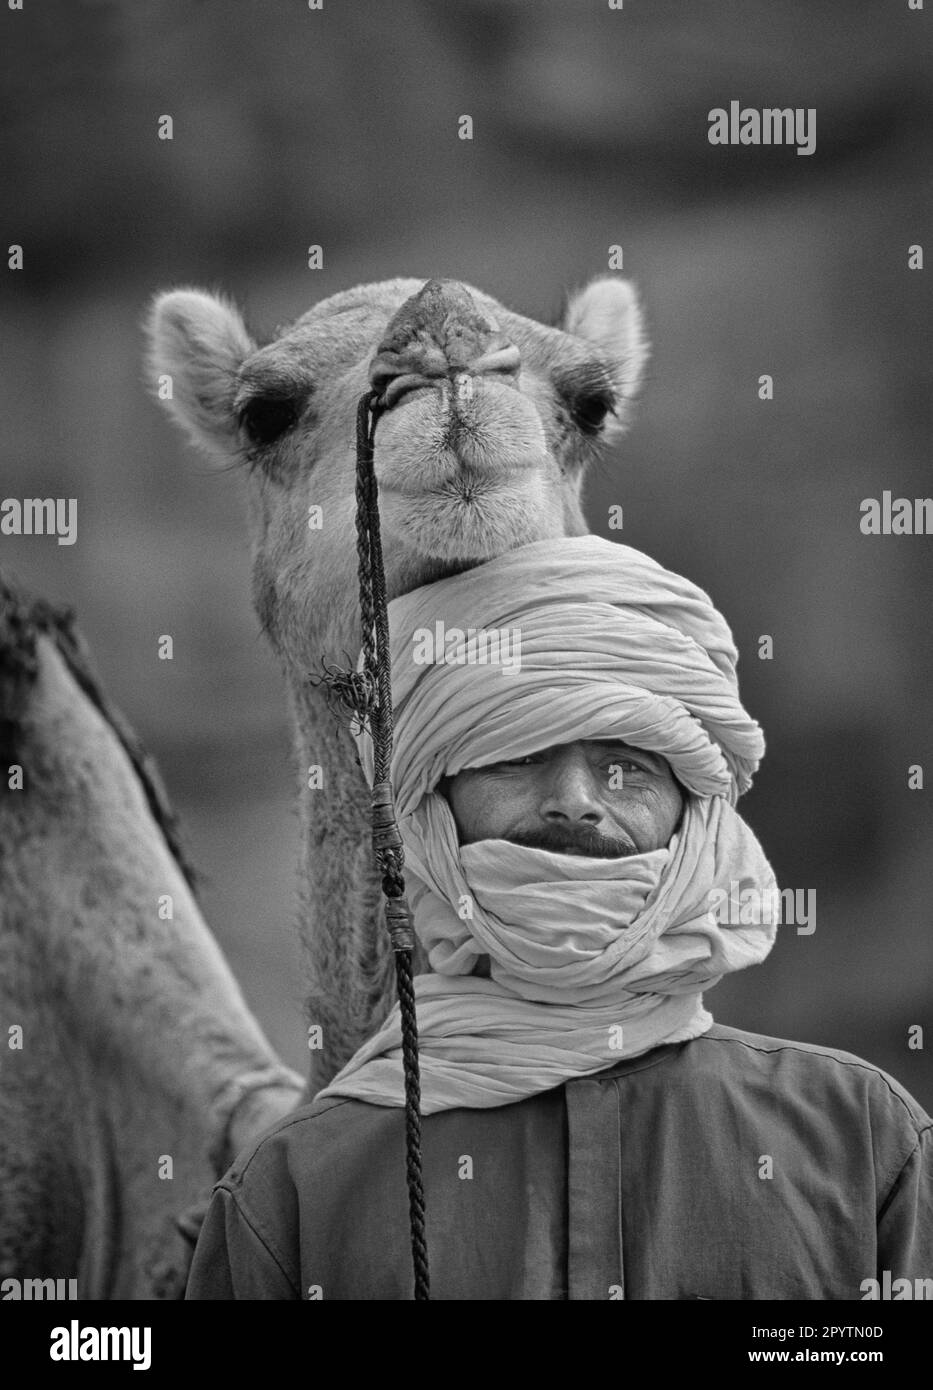 Tuareg man algeria Black and White Stock Photos & Images - Alamy